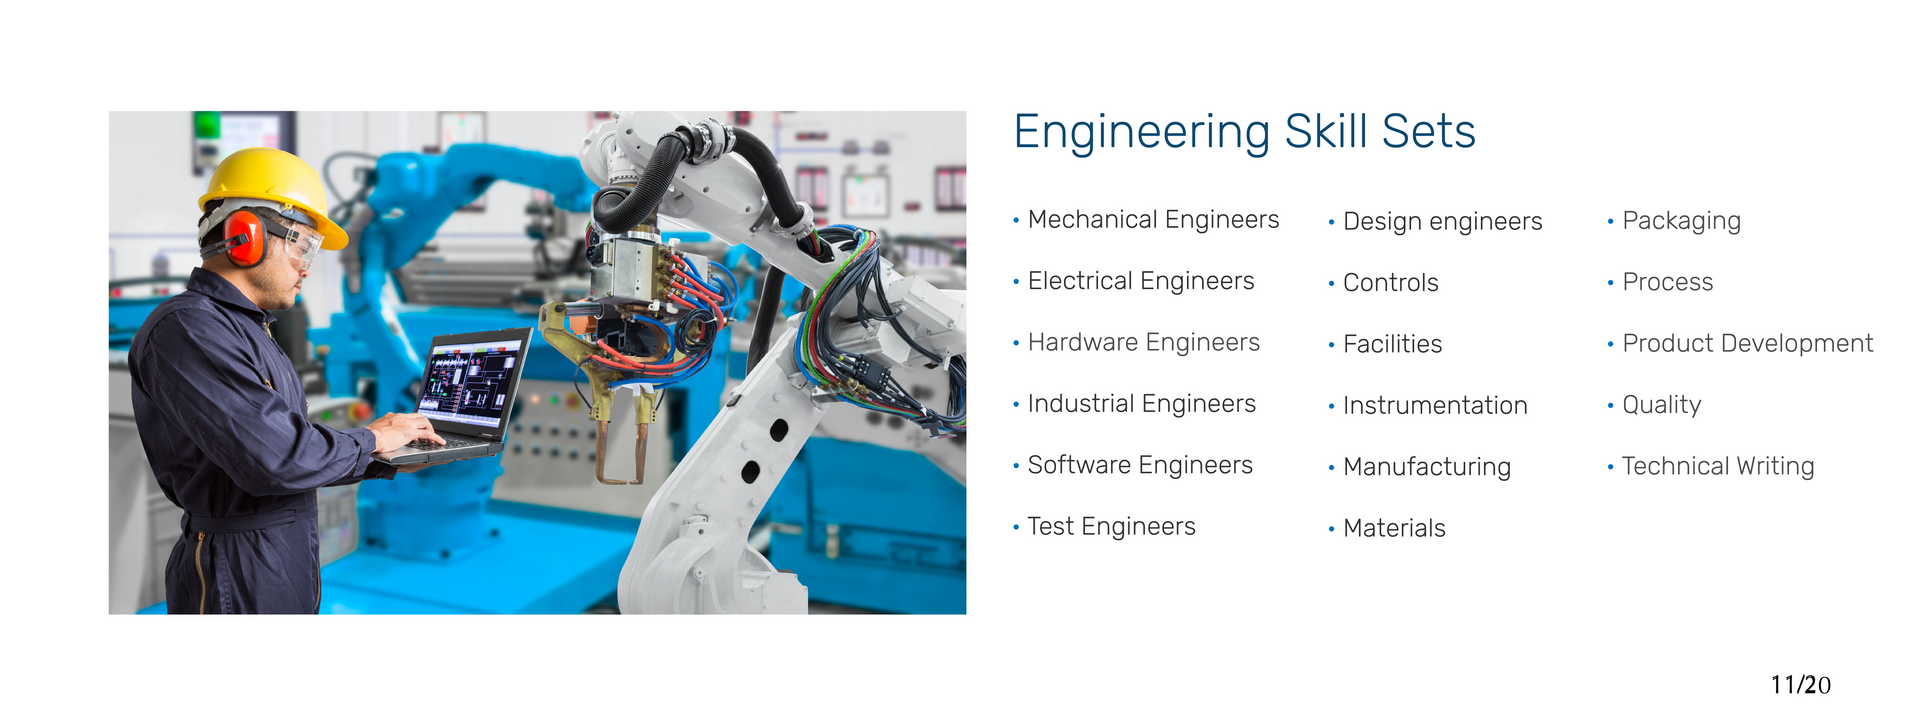 Elite Technical Engineering Skills Sets